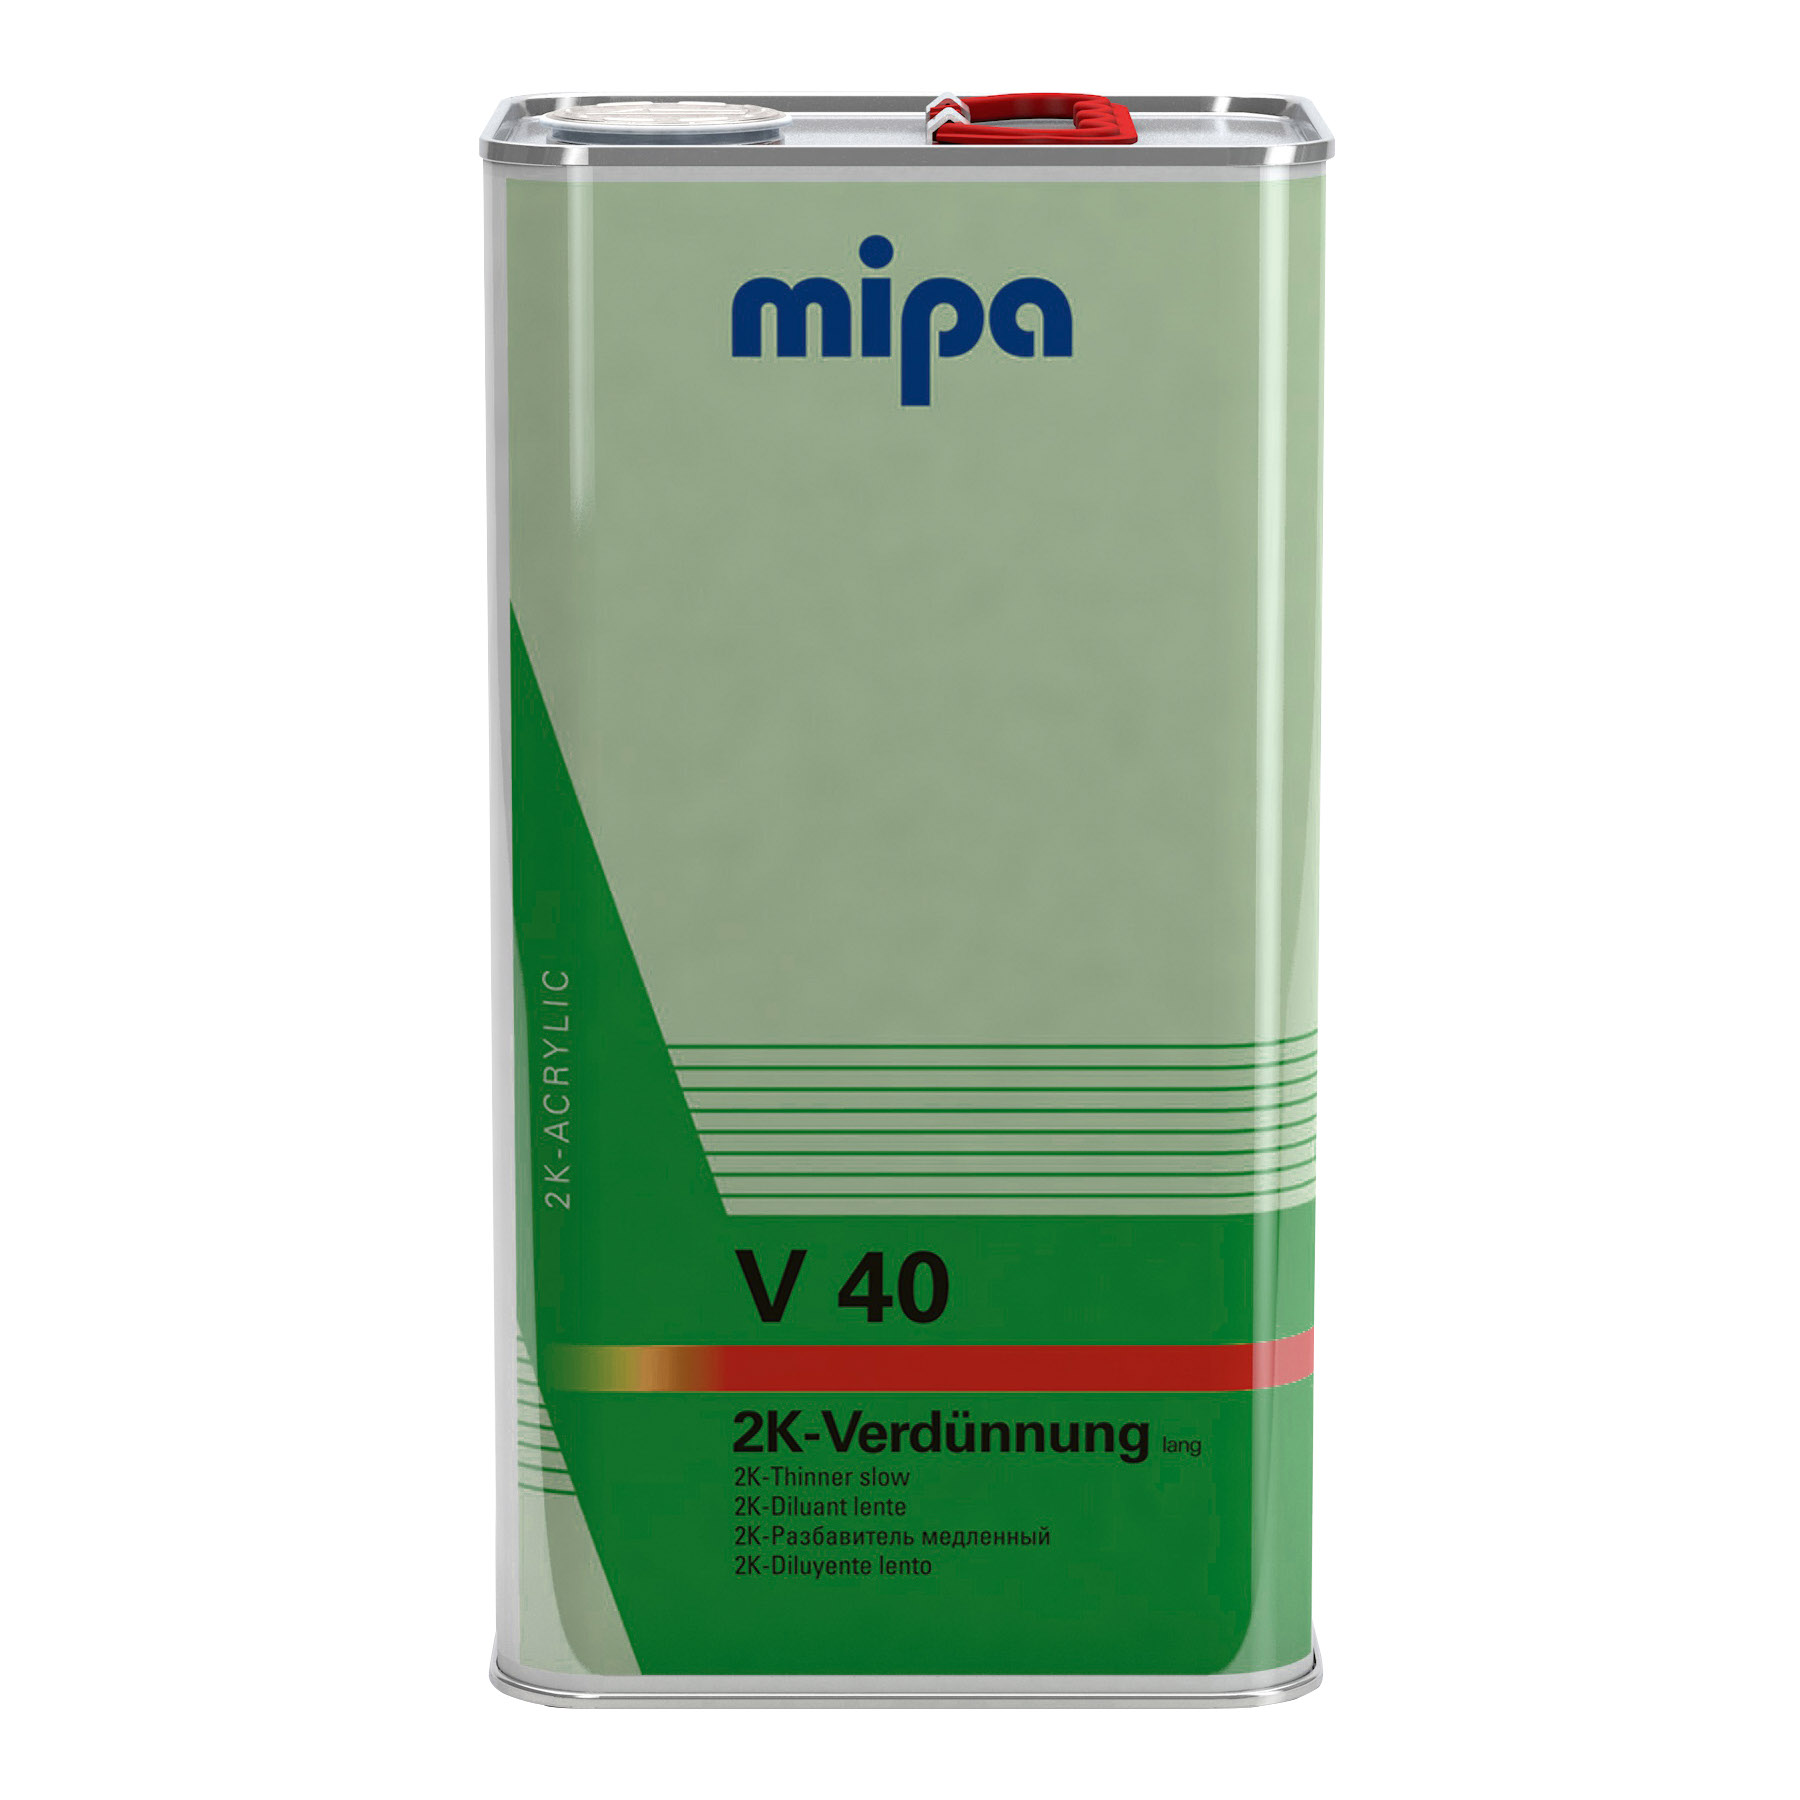 Mipa 2K-Verdünnung lang V 40, 5l